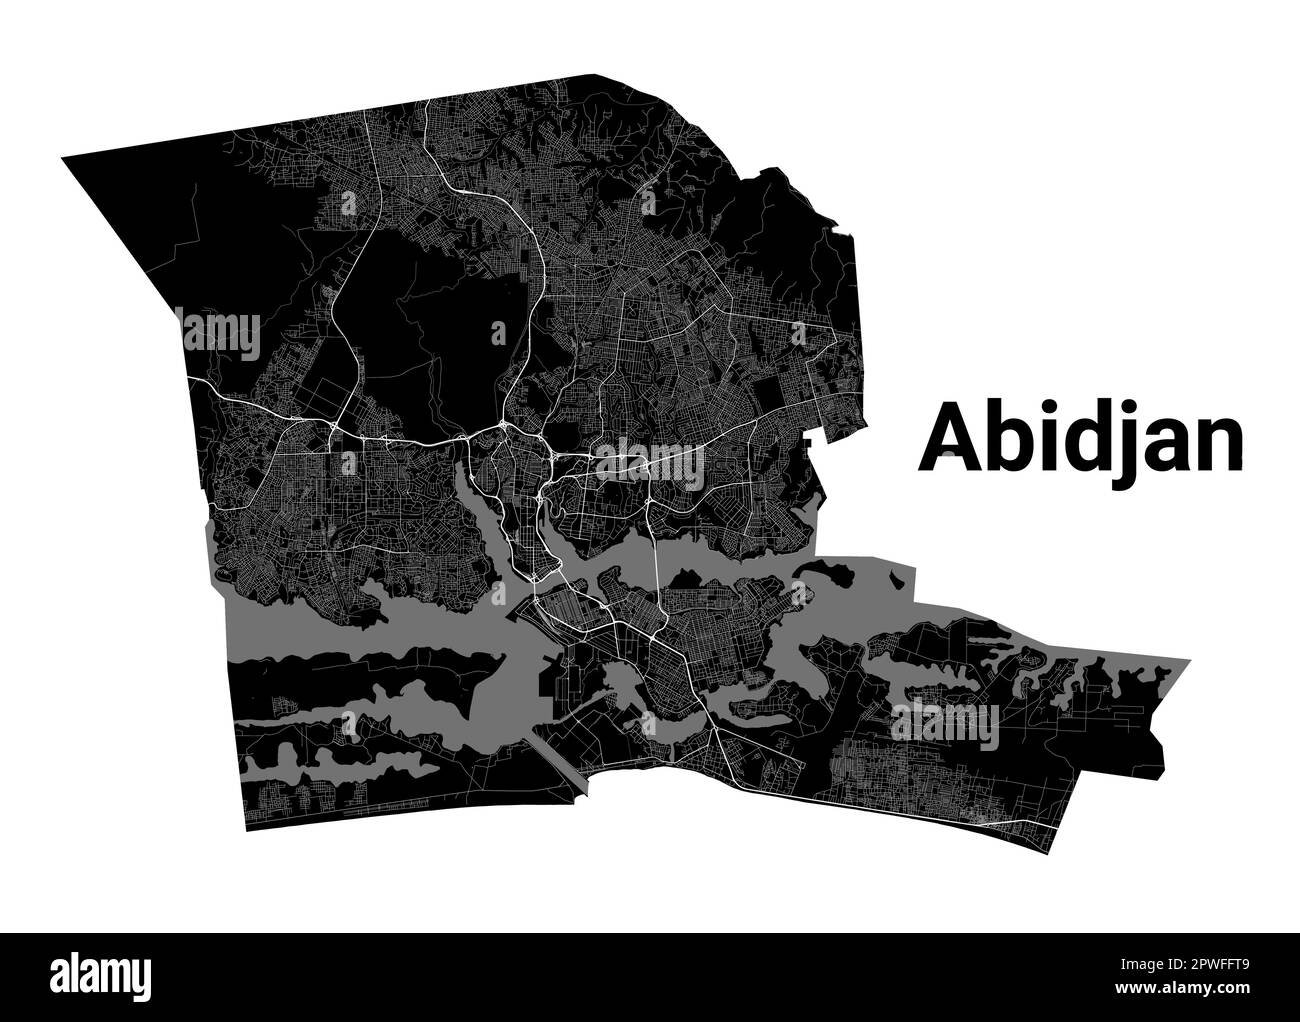 Abidjan, carte de la Côte d'Ivoire. Carte détaillée en noir du quartier administratif de la ville d'Abidjan. Vue sur l'aria métropolitain avec affiche CityScape. Terre noire avec roa blanc Illustration de Vecteur